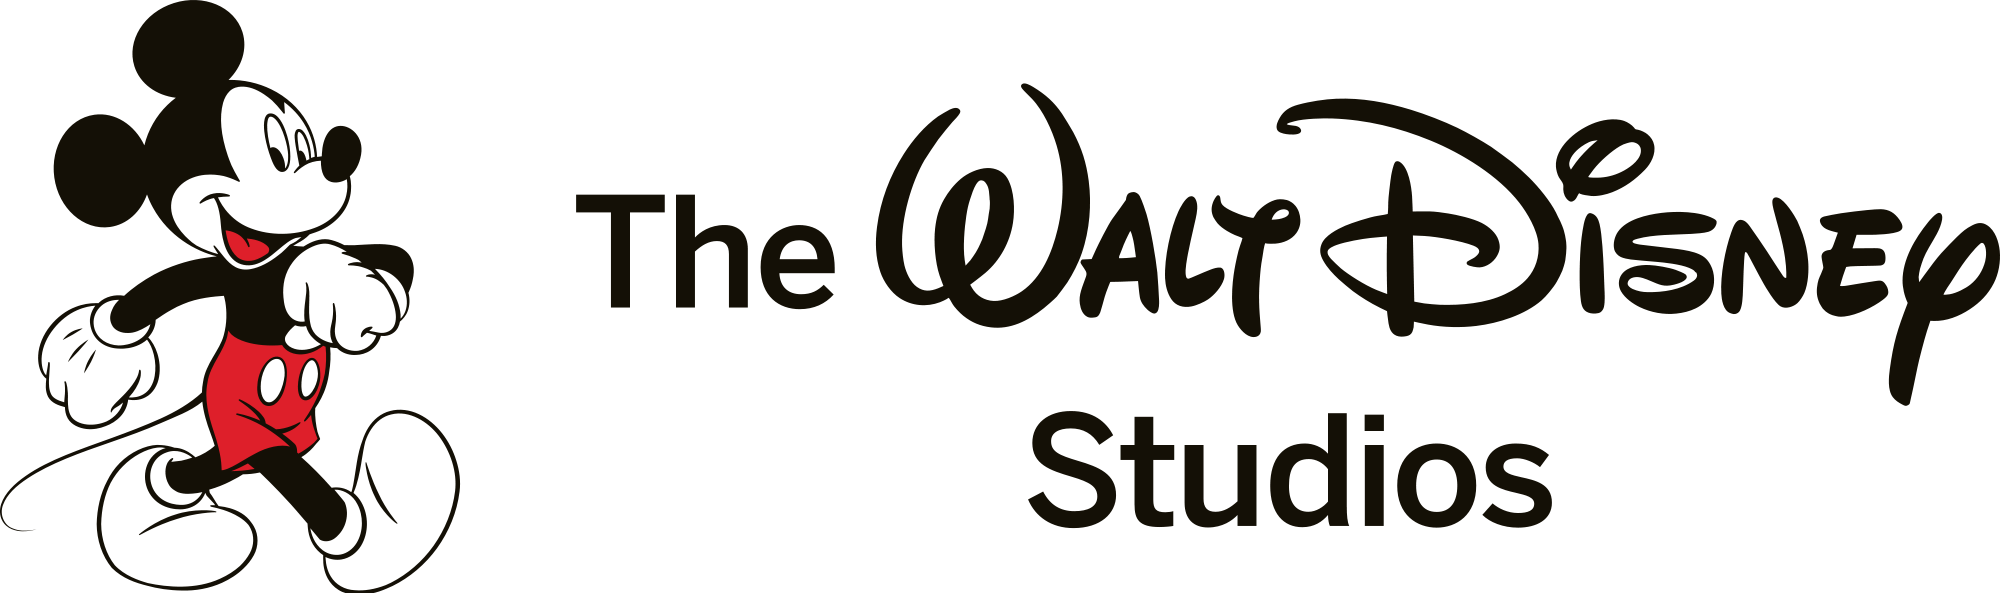 Логотип диснея. Студия Уолта Диснея. Логотип студии Уолта Диснея. Уолт Дисней анимейшен студио. Фирменный знак Уолт Дисней.